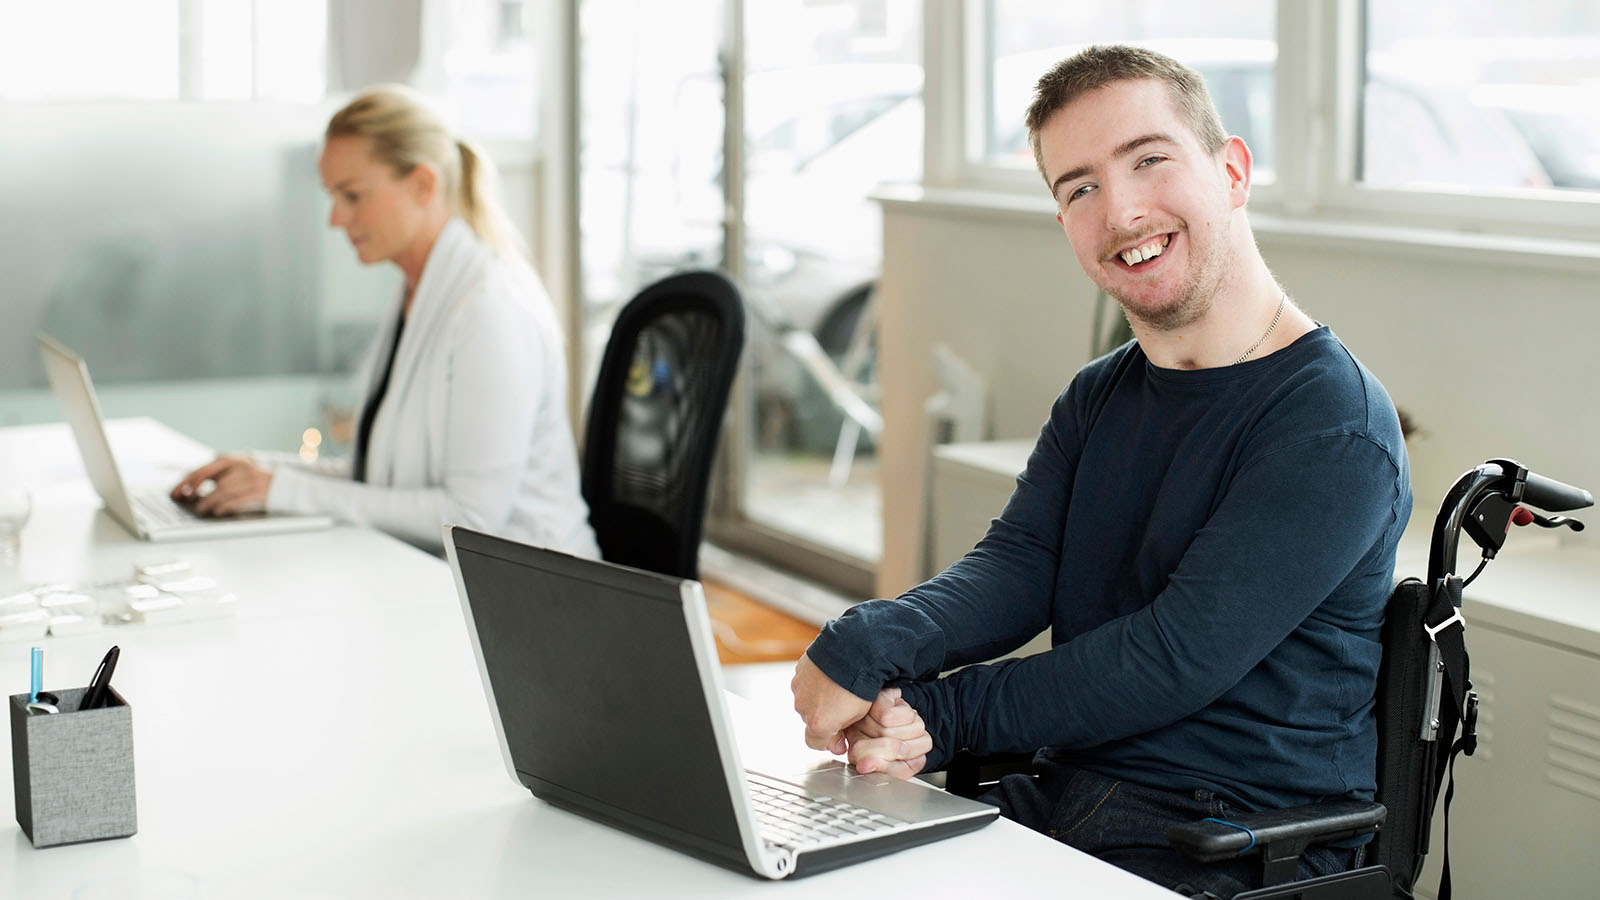 Porträt eines lächelnden Geschäftsmannes mit Cerebralparese, der ein Laptop im Büro verwendet.